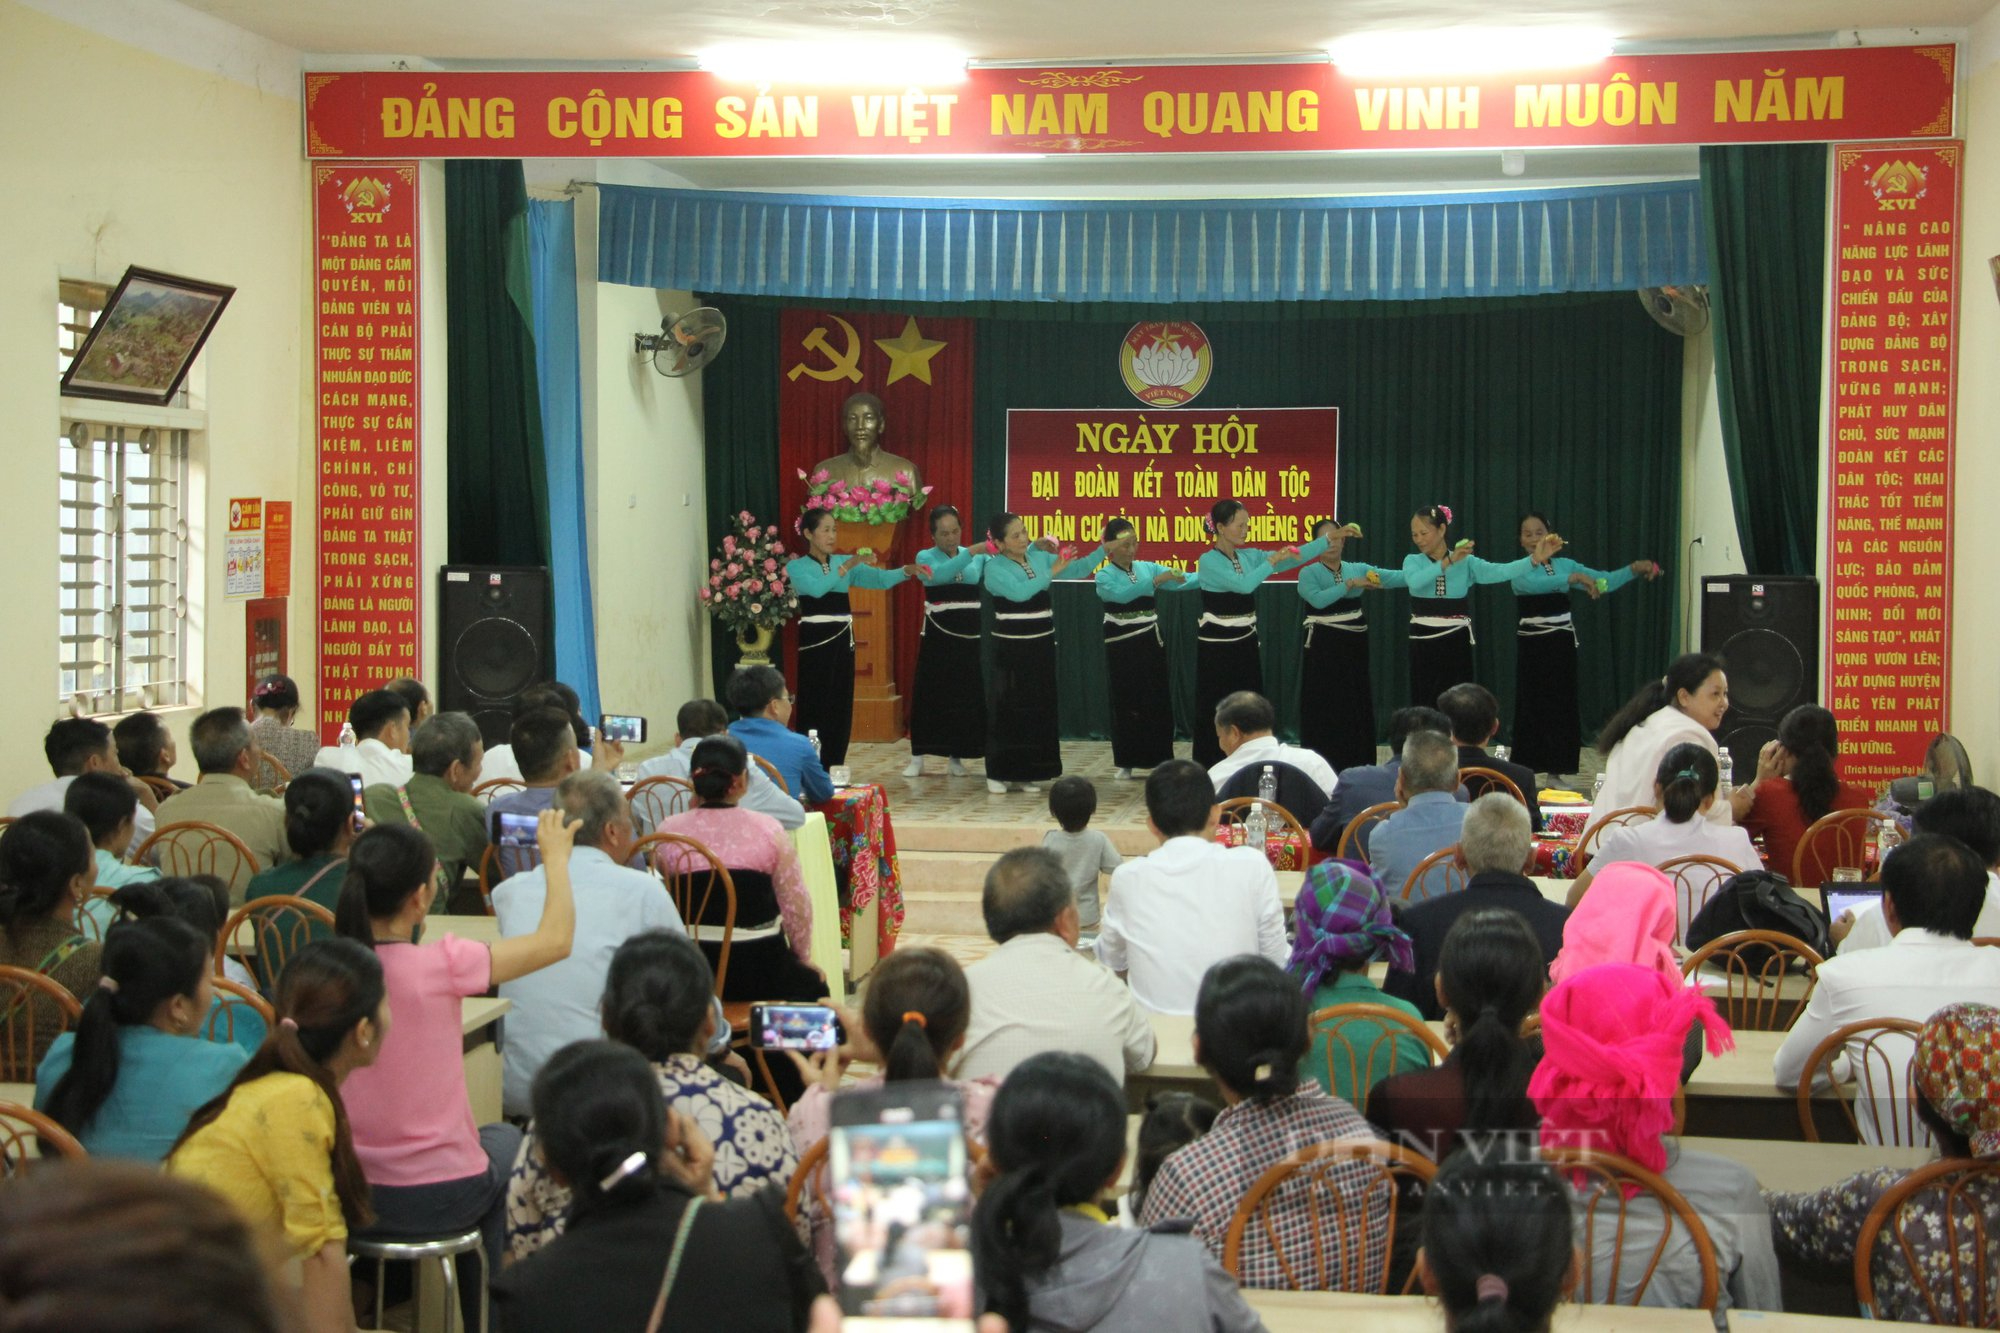 Phó Chủ tịch Trung ương Hội Nông dân Việt Nam dự ngày hội Ngày hội Đại đoàn kết toàn dân tộc tại Sơn La - Ảnh 1.